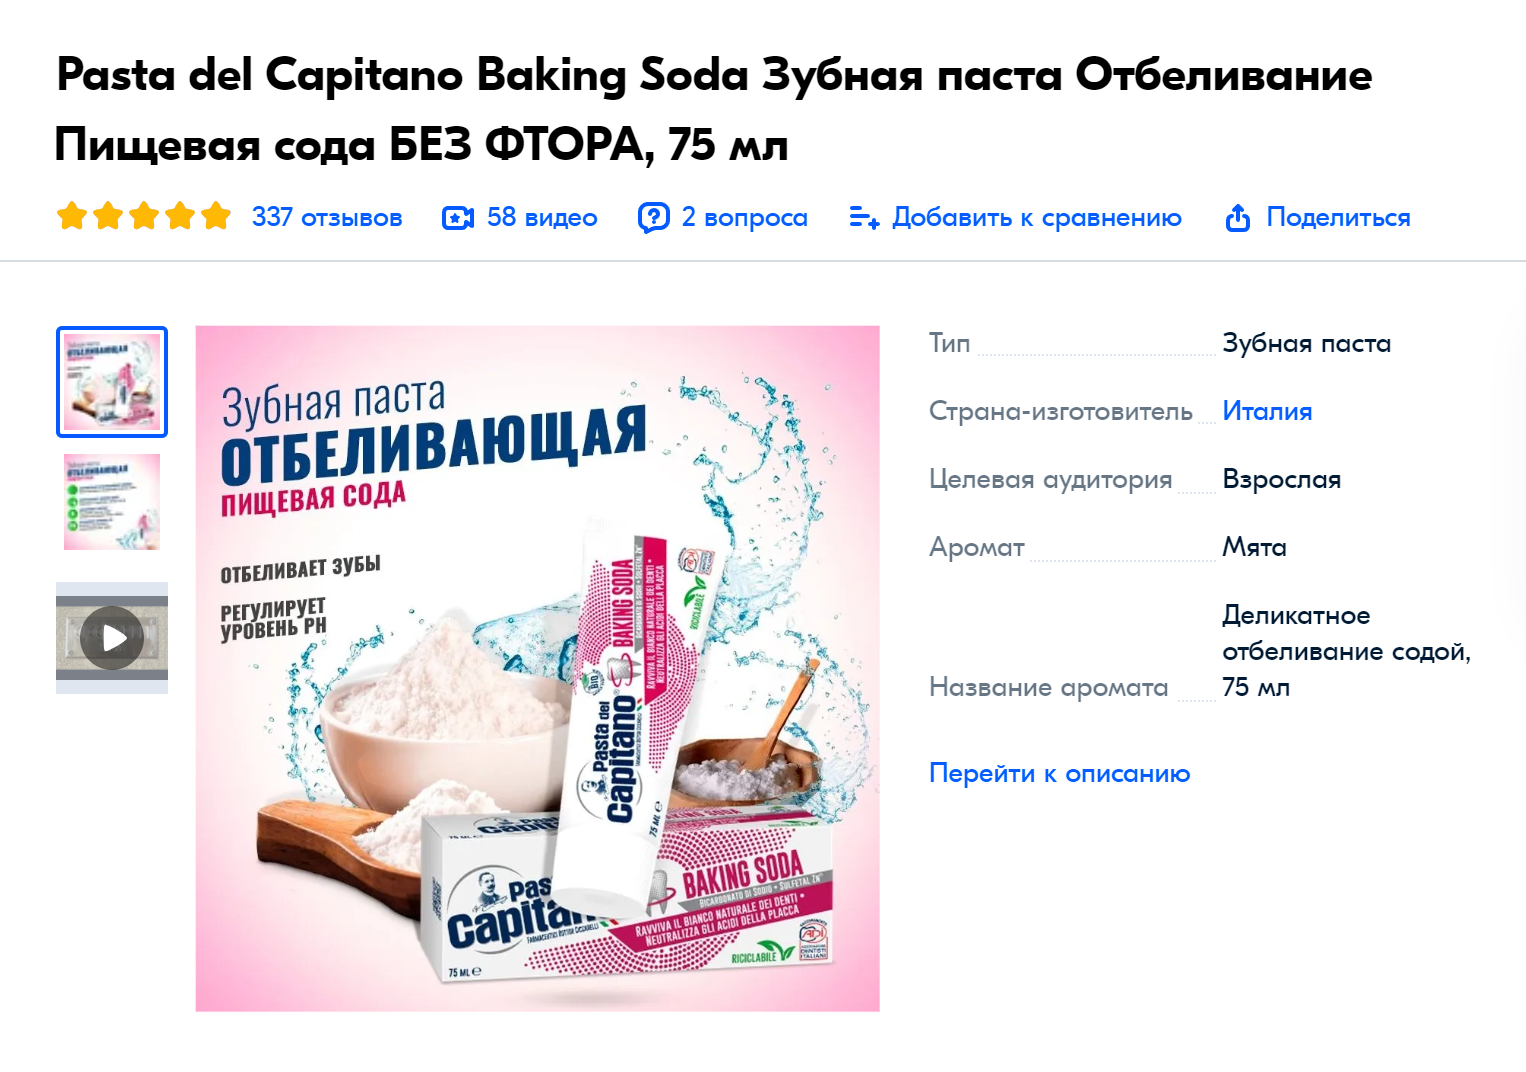 Отбеливающая зубная паста с питьевой содой — RDA 94. Источник: ozon.ru